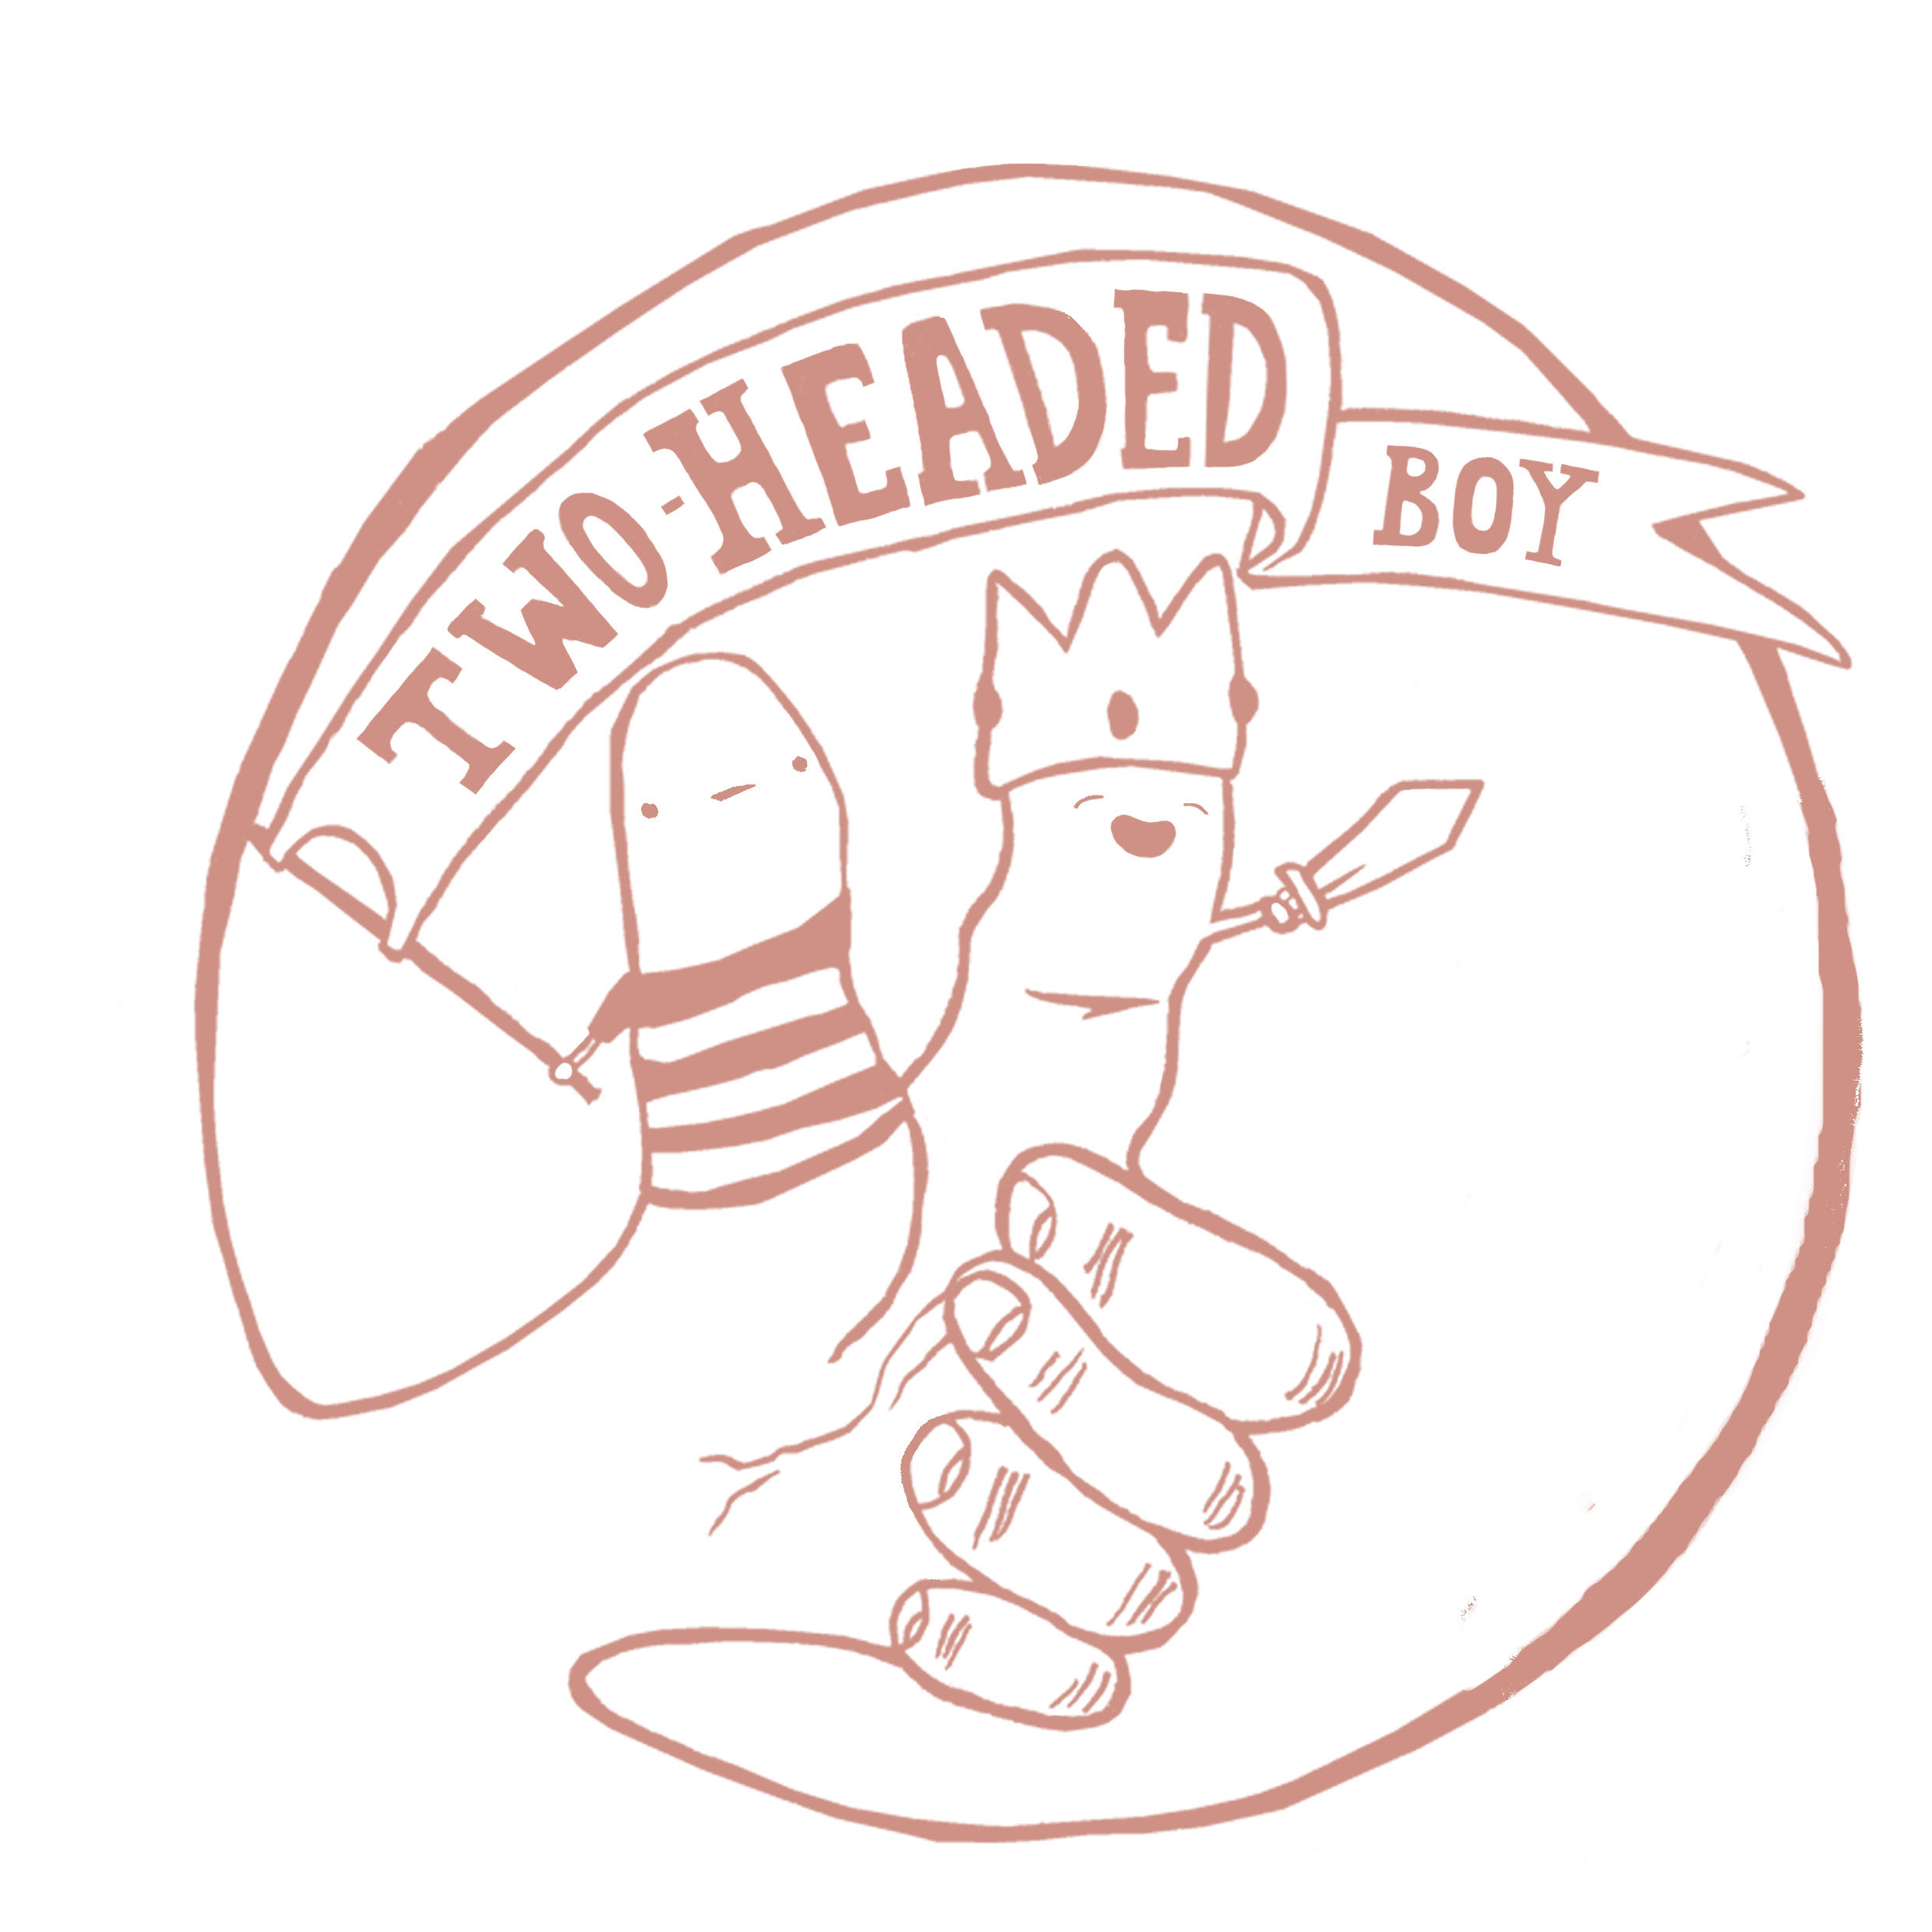 Two-Headed Boy